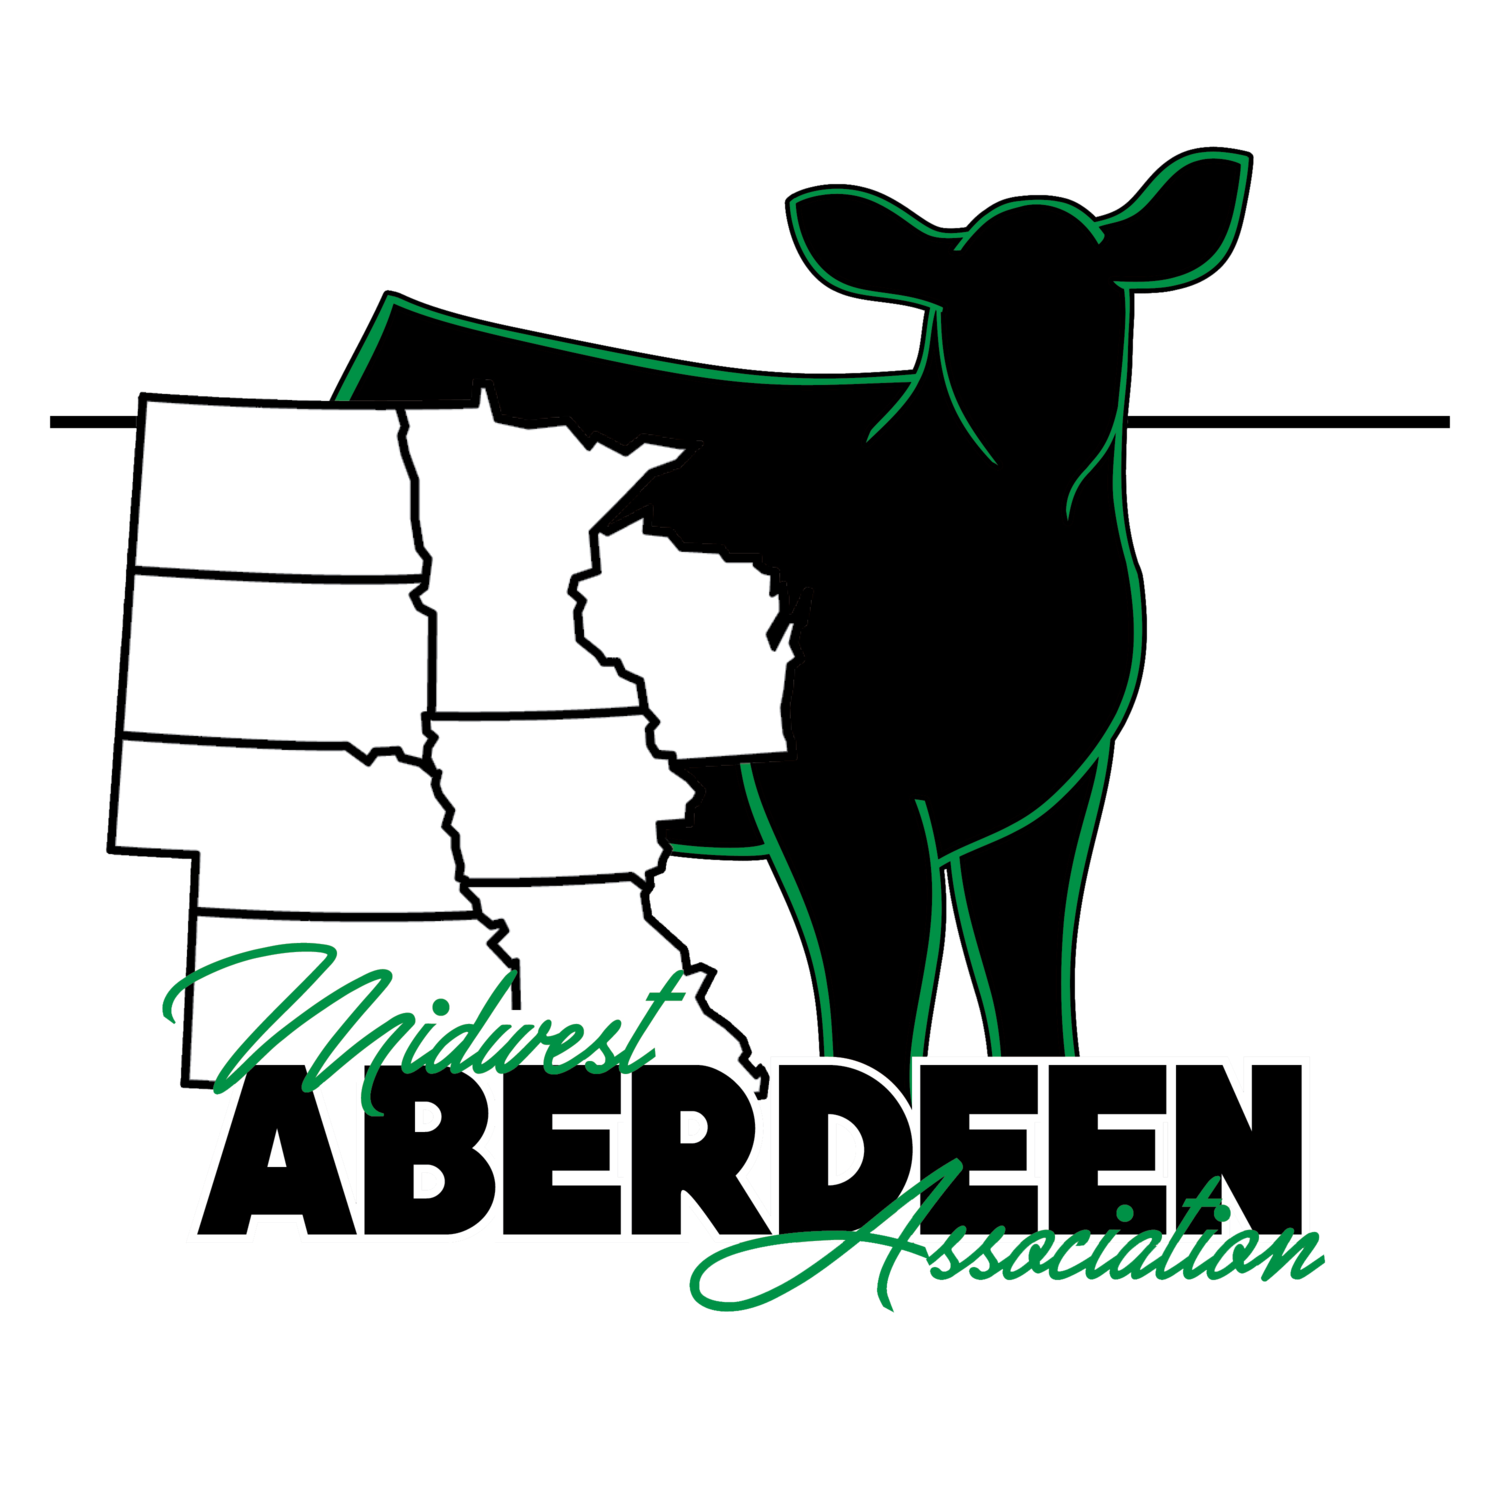 Midwest Aberdeen Association